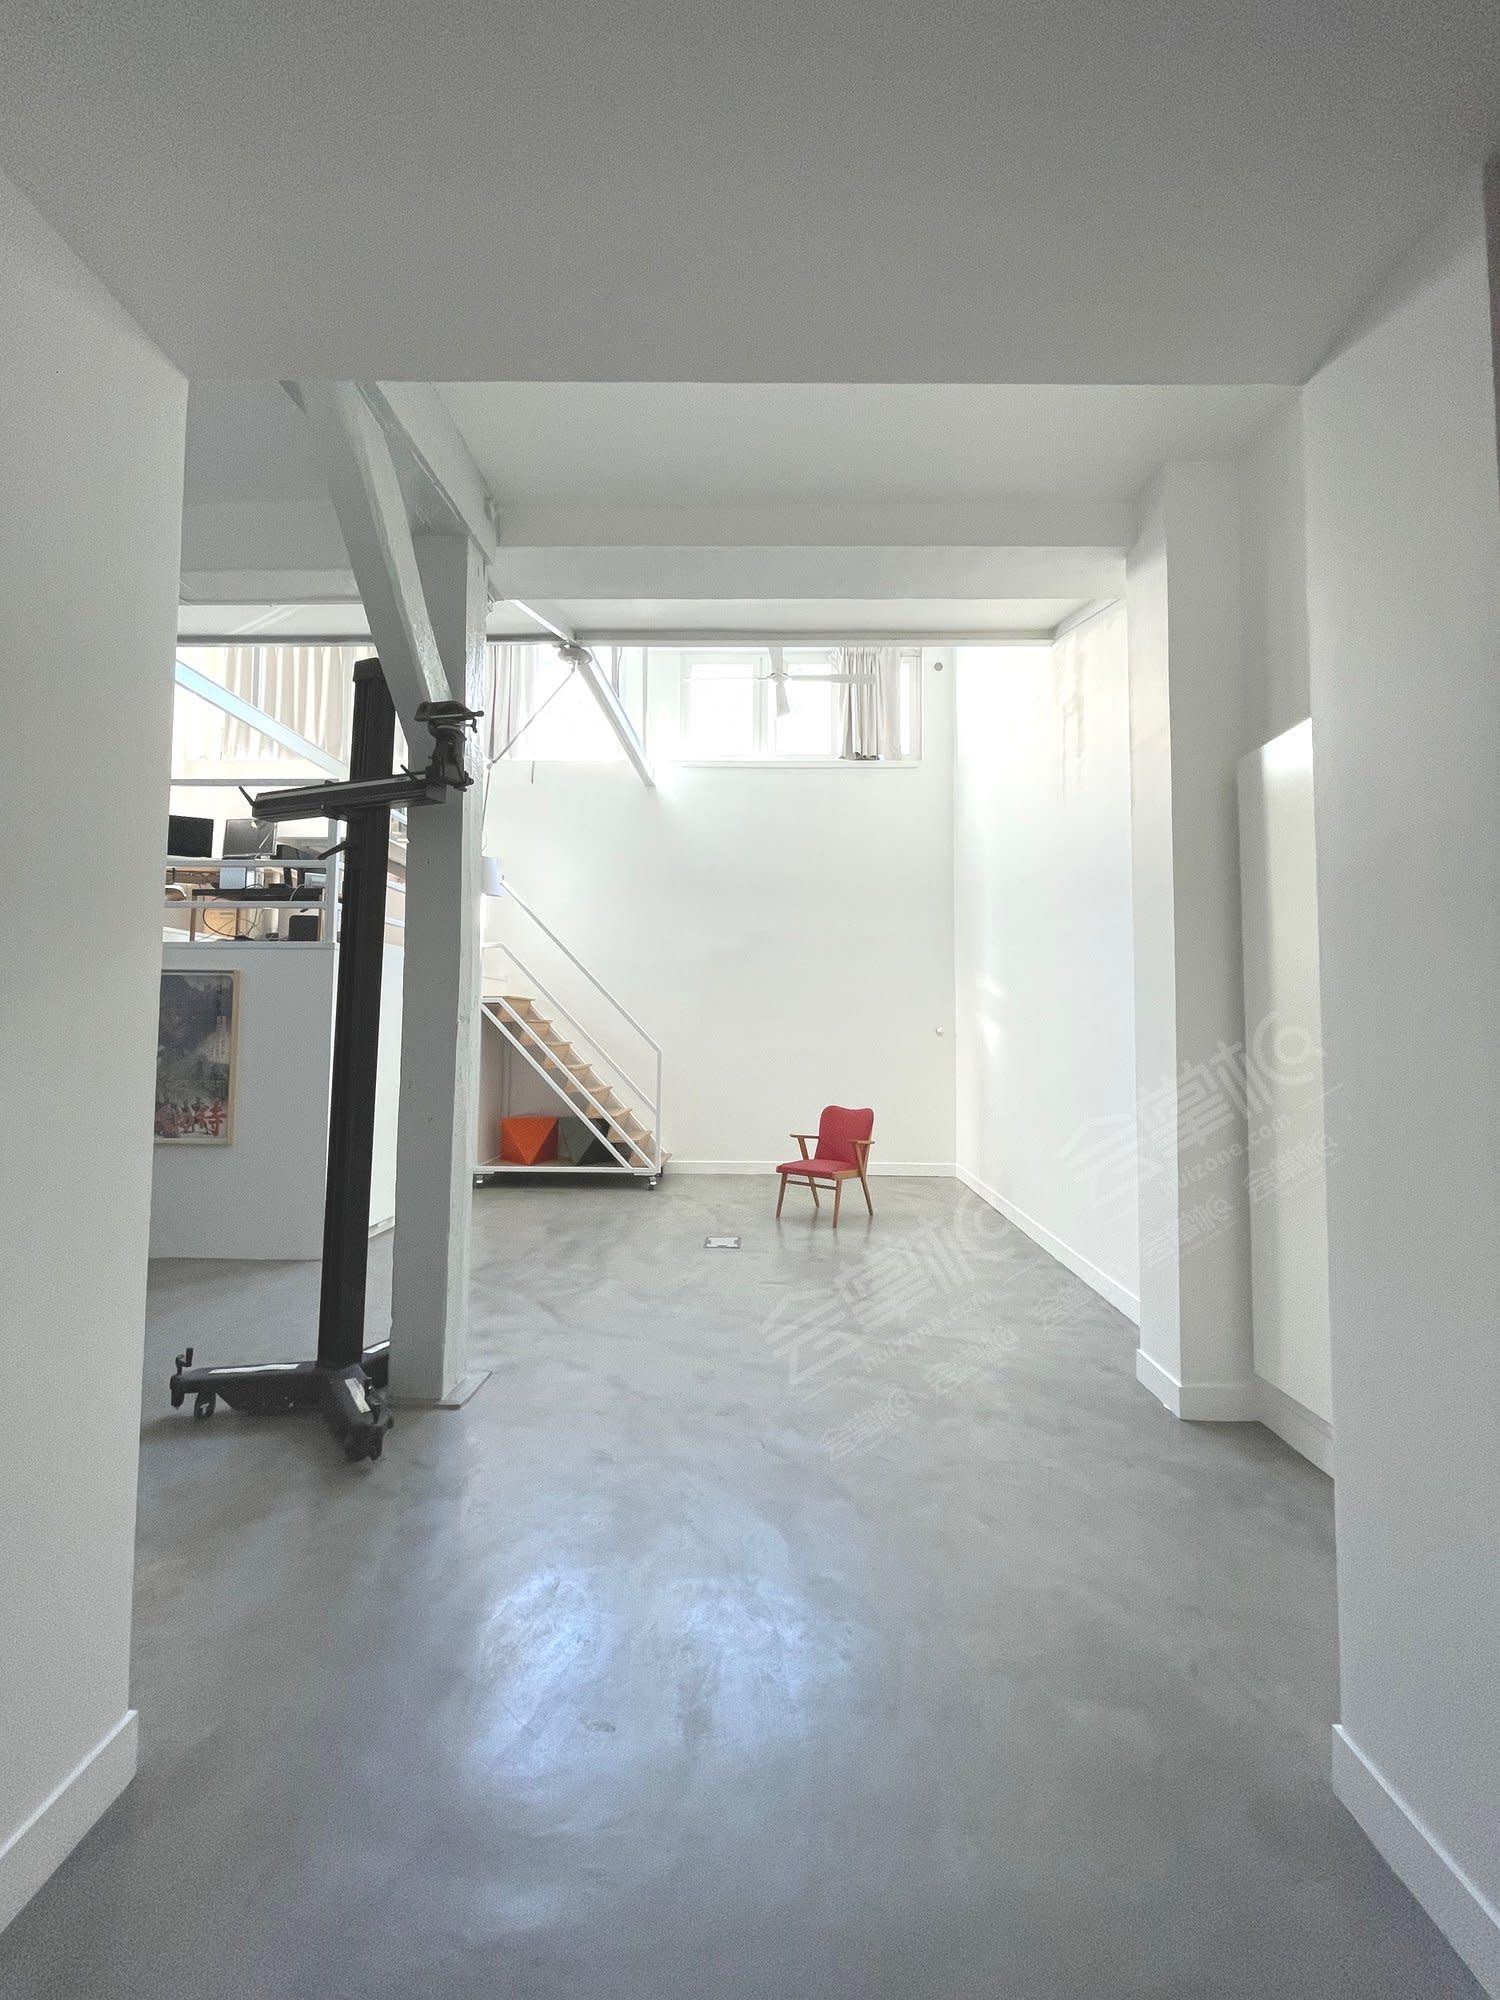 Espace showroom, studio photo, vidéo, galerie, événementiel dans le 10ème arrondissement